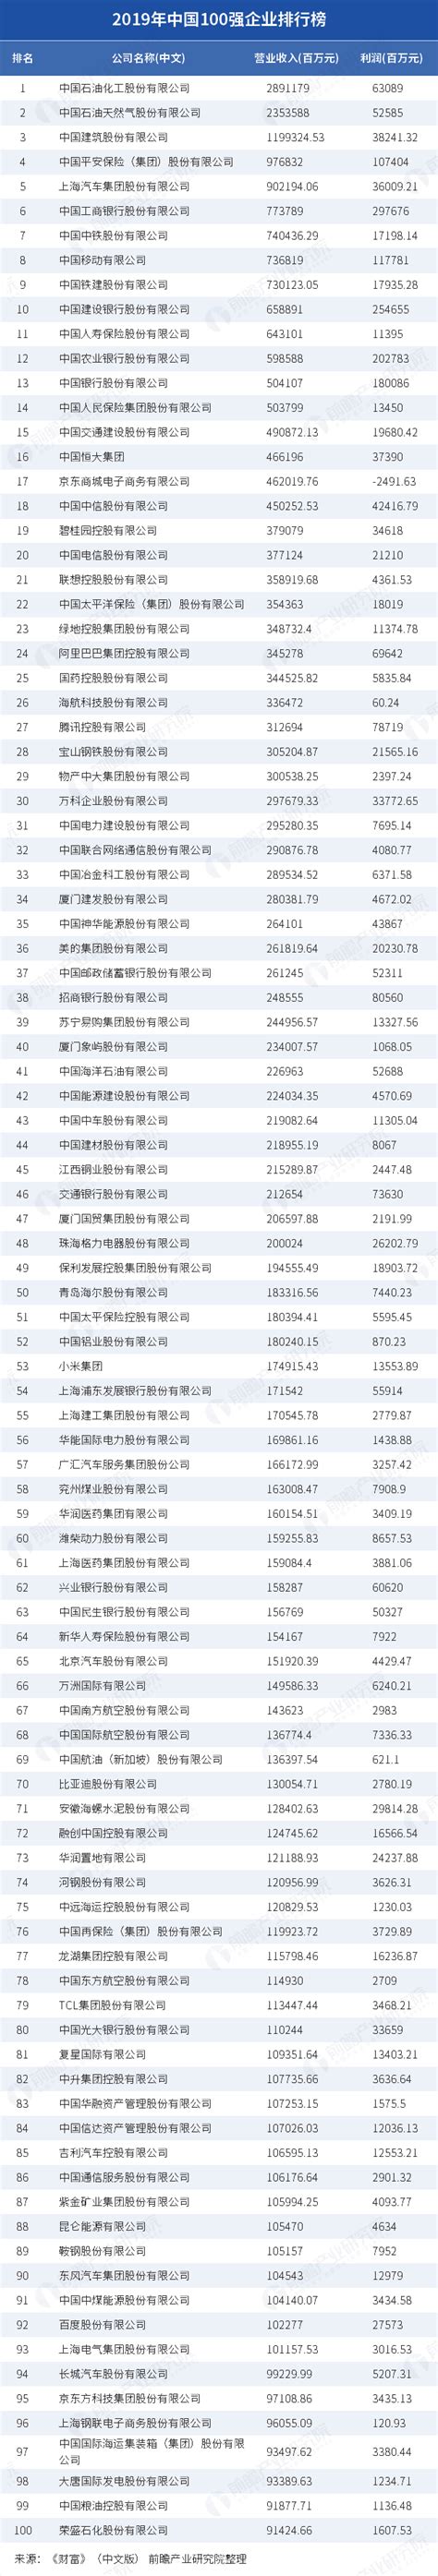 中国企业100强排名_2019年中国100强企业排行榜_研究报告 - 前瞻产业研究院